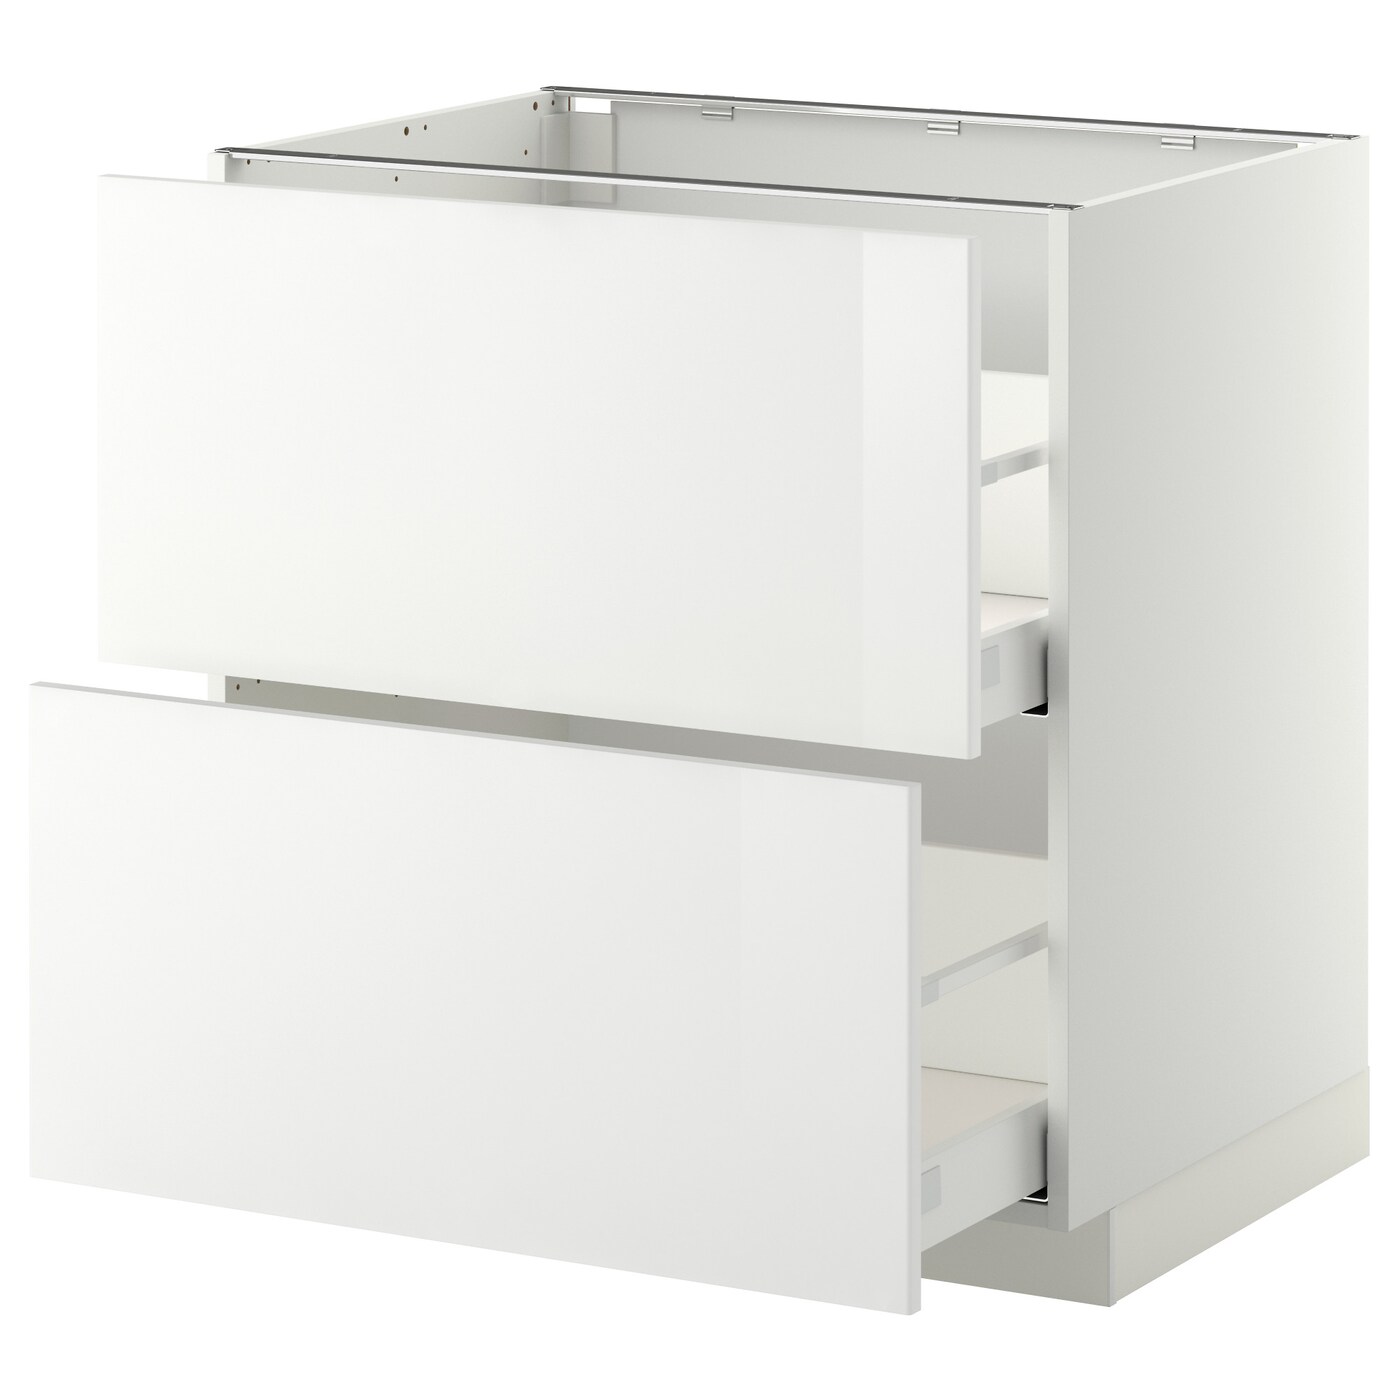 Напольный шкаф  - IKEA METOD MAXIMERA, 88x61,8x80см, белый, МЕТОД МАКСИМЕРА ИКЕА